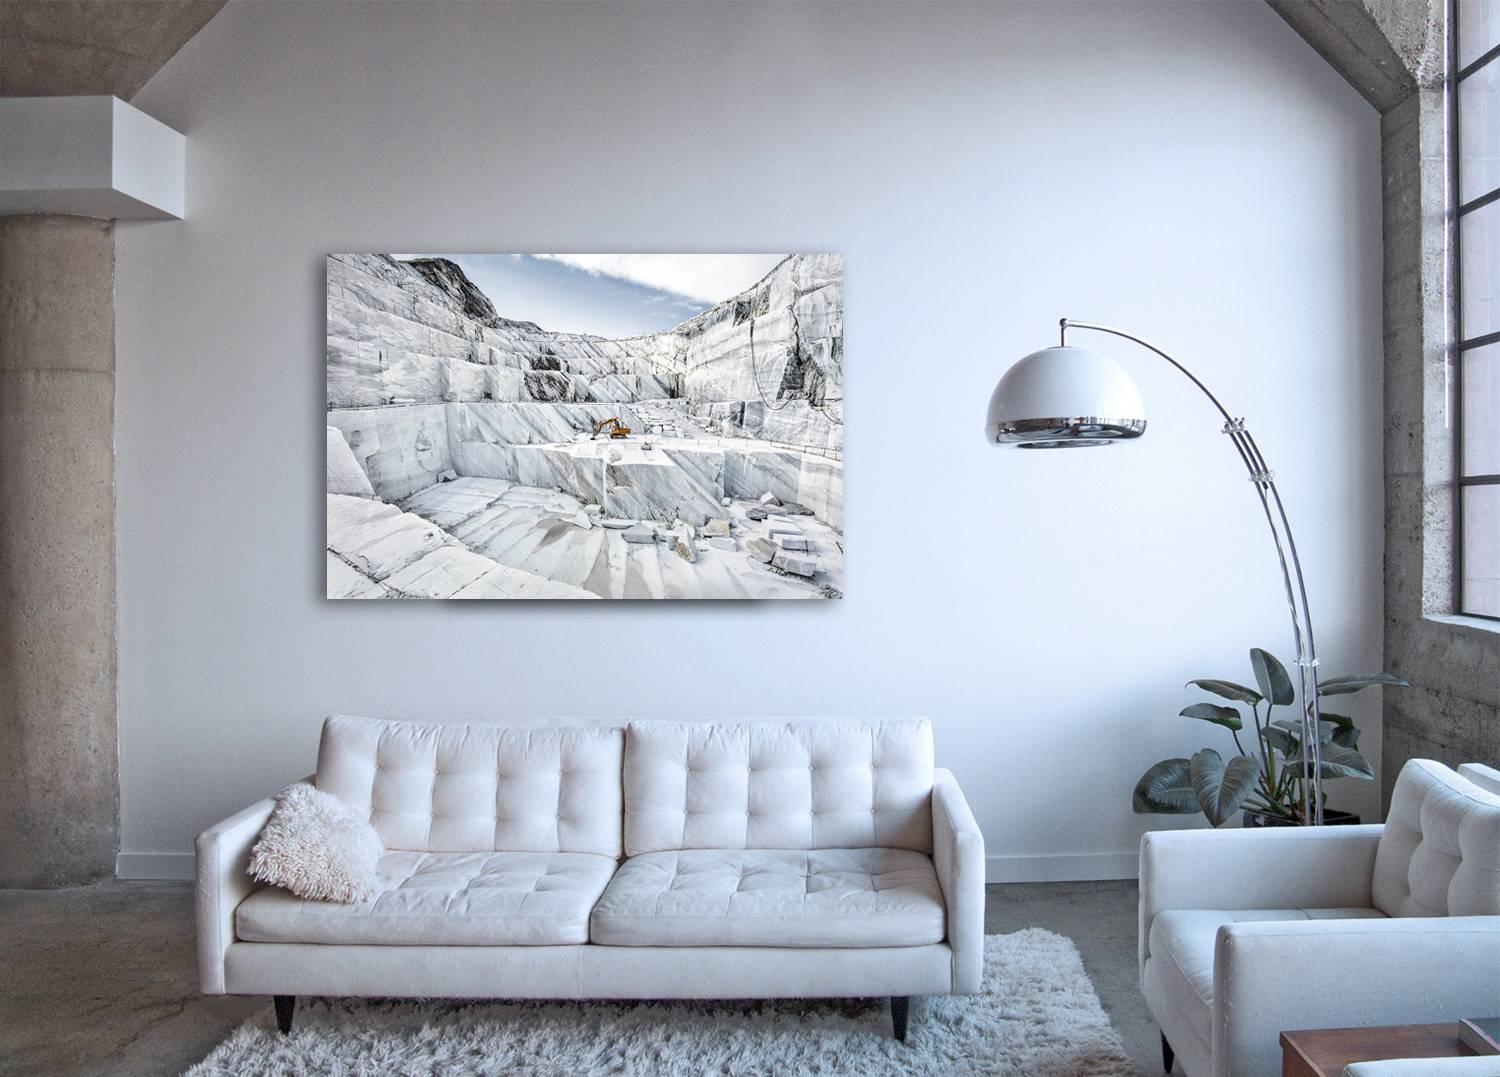 Marmo di Carrara – Großformatfotografie eines ikonischen italienischen Marmorbruchs (Zeitgenössisch), Photograph, von Frank Schott